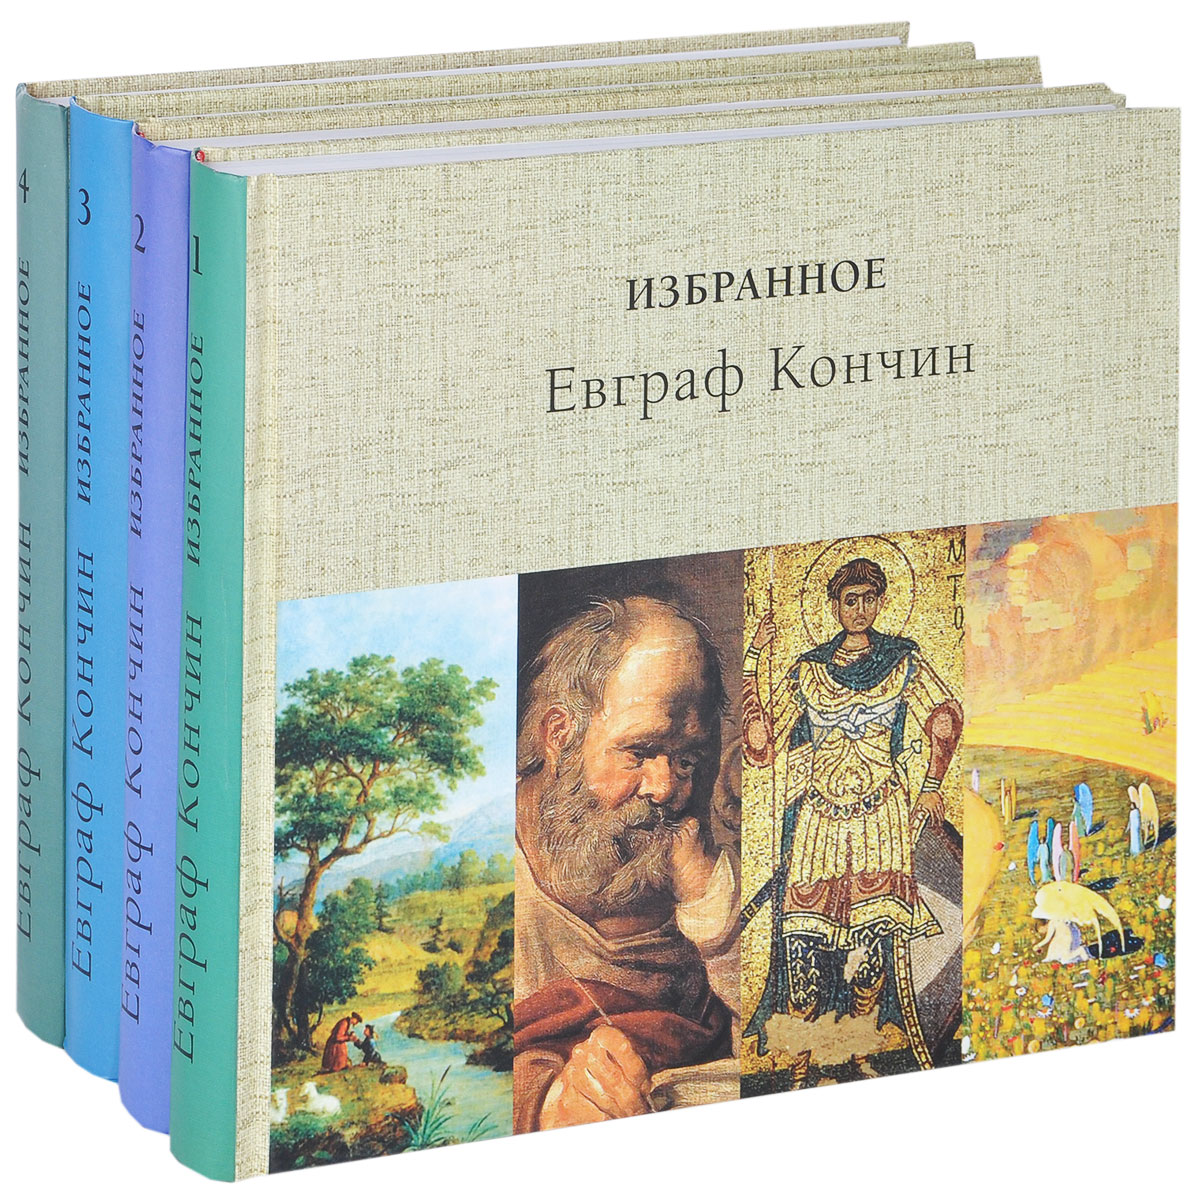 Евграф Кончин. Избранное. В 4 томах (комплект из 4 книг). Евграф Кончин